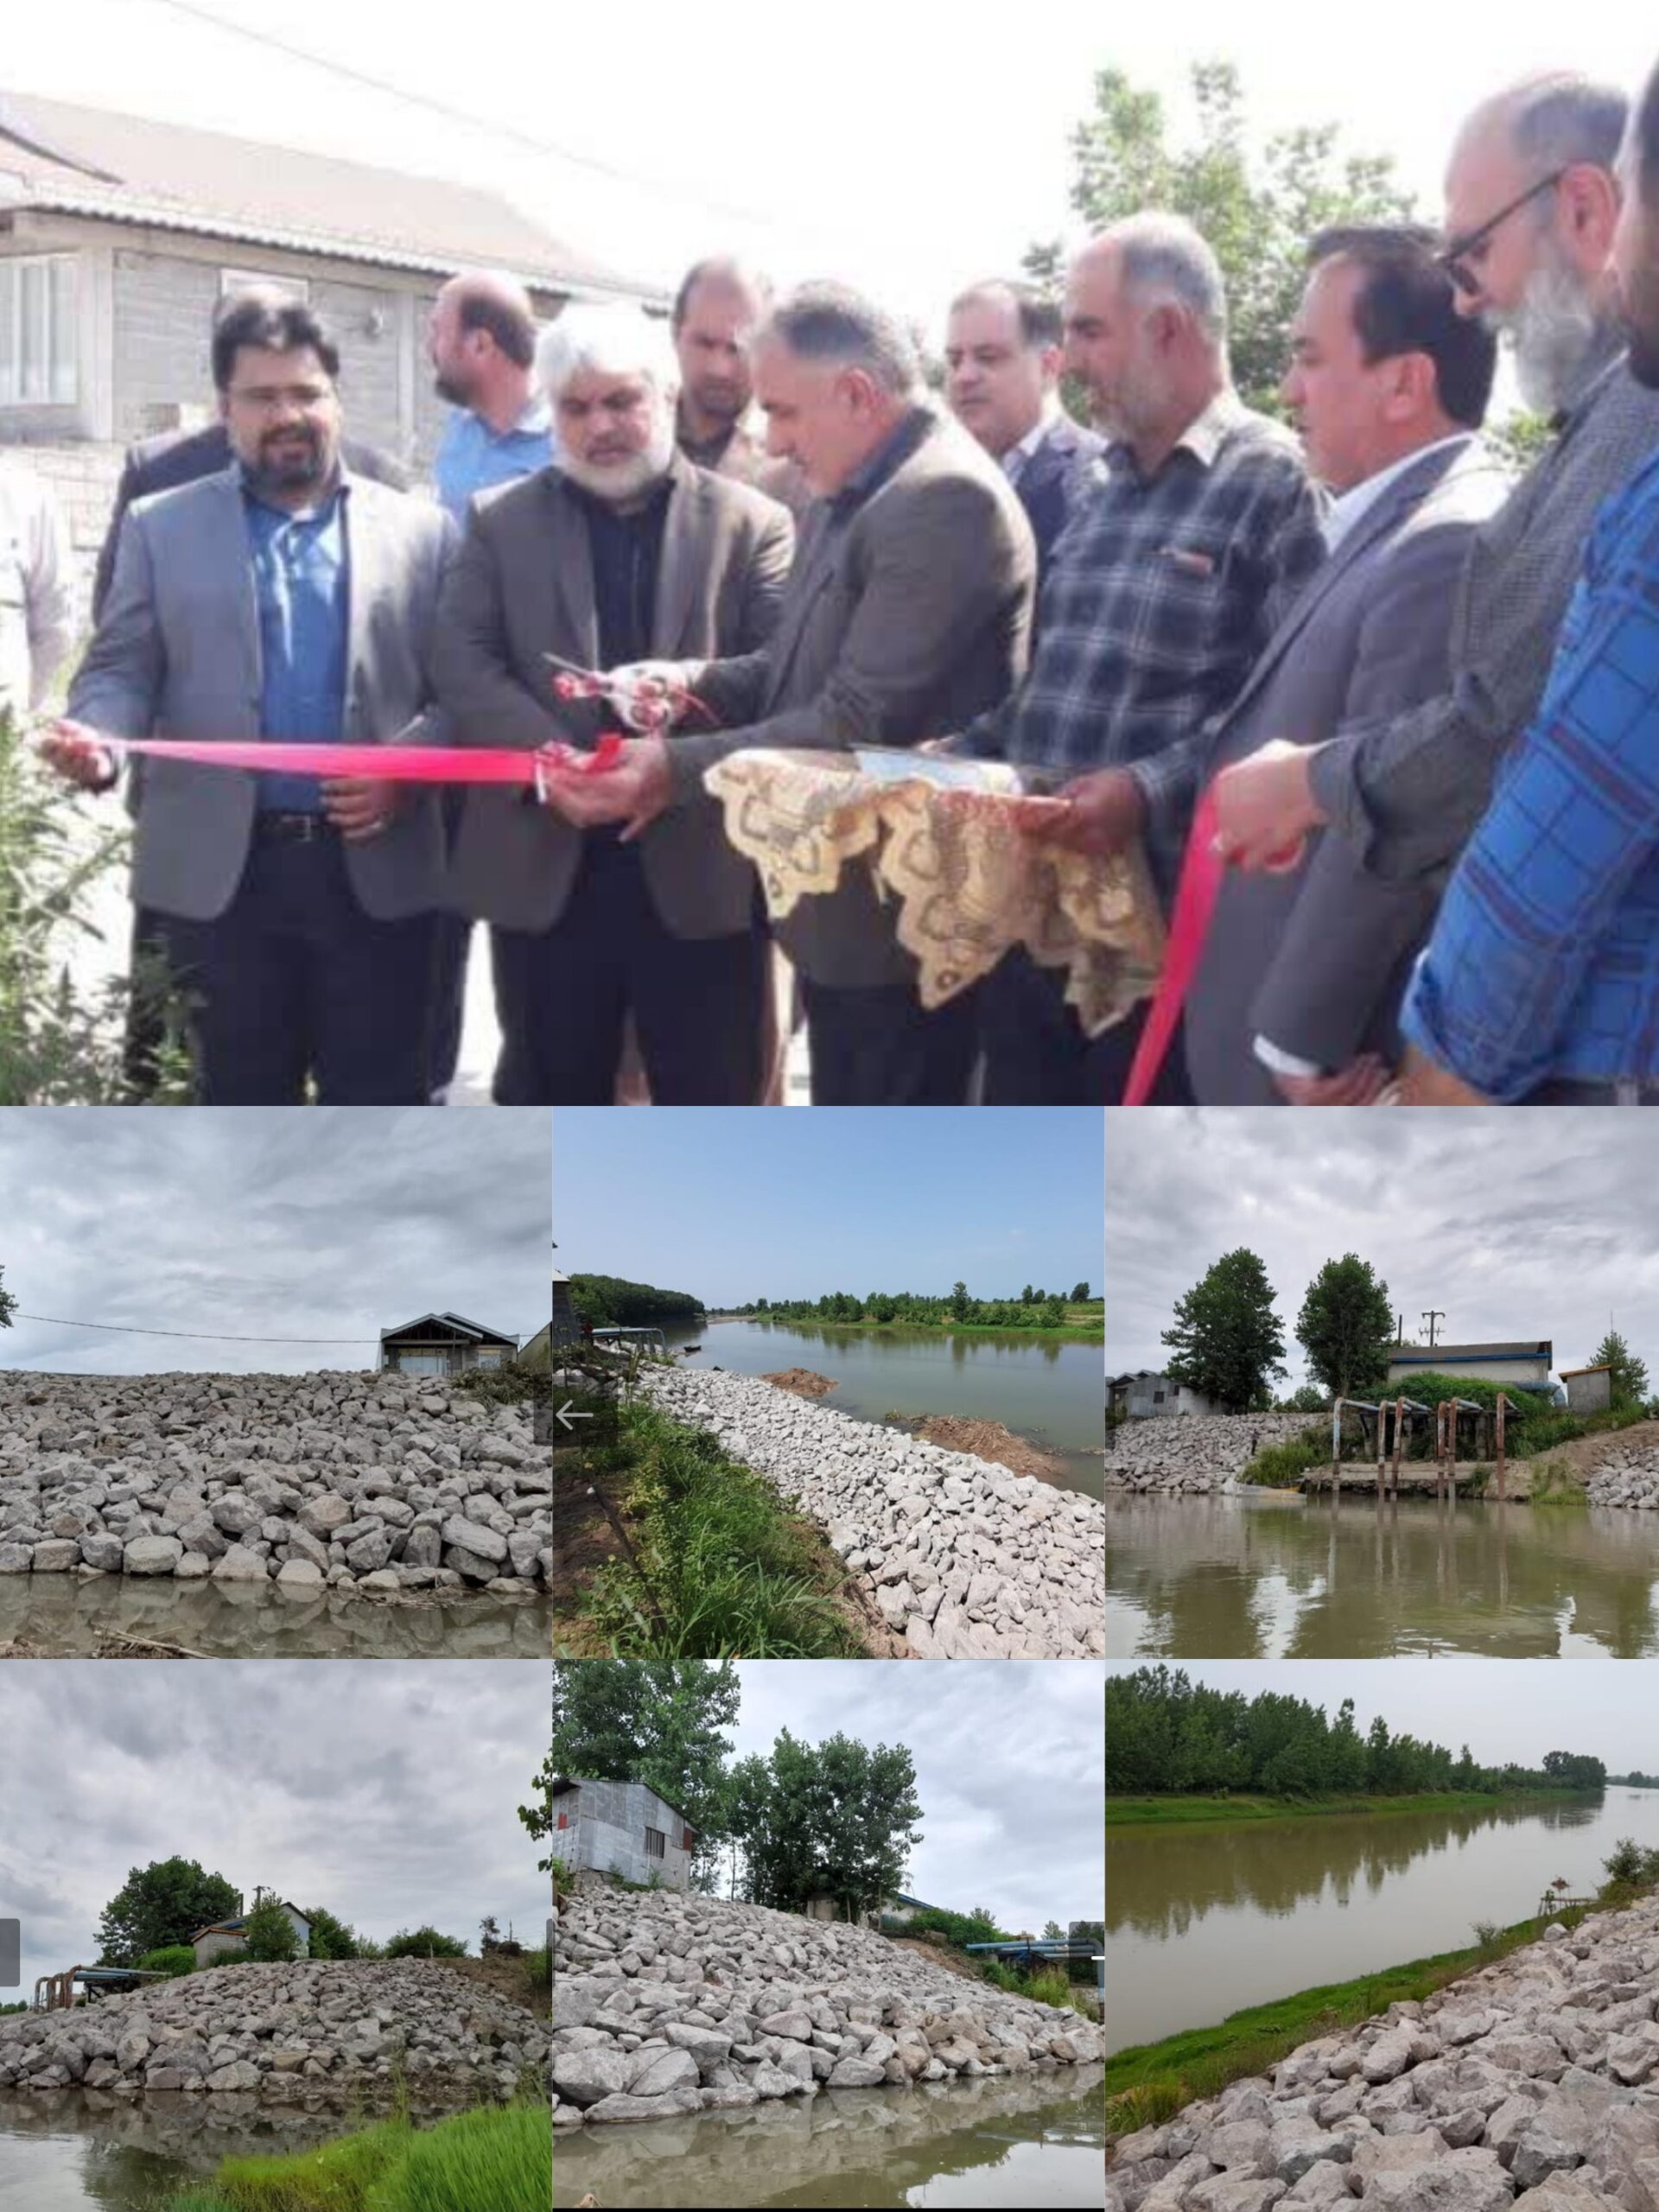 پروژه دیواره سازی و ساماندهی رودخانه سفیدرود در منطقه محسن آباد به بهره برداری رسید